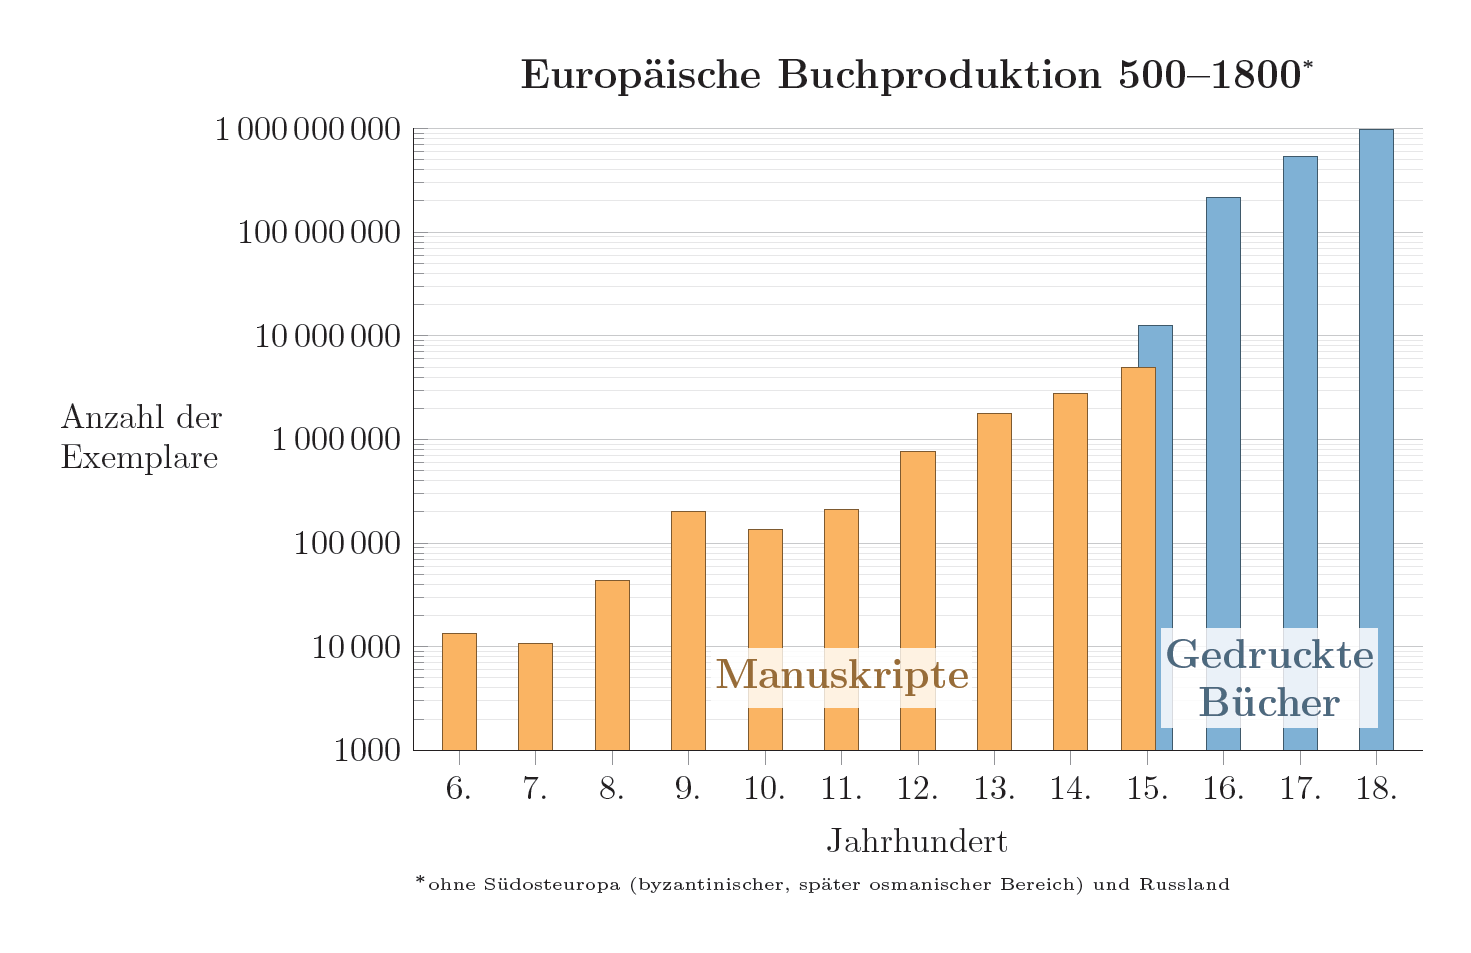 Die europäische Buchproduktion von 500 bis 1800